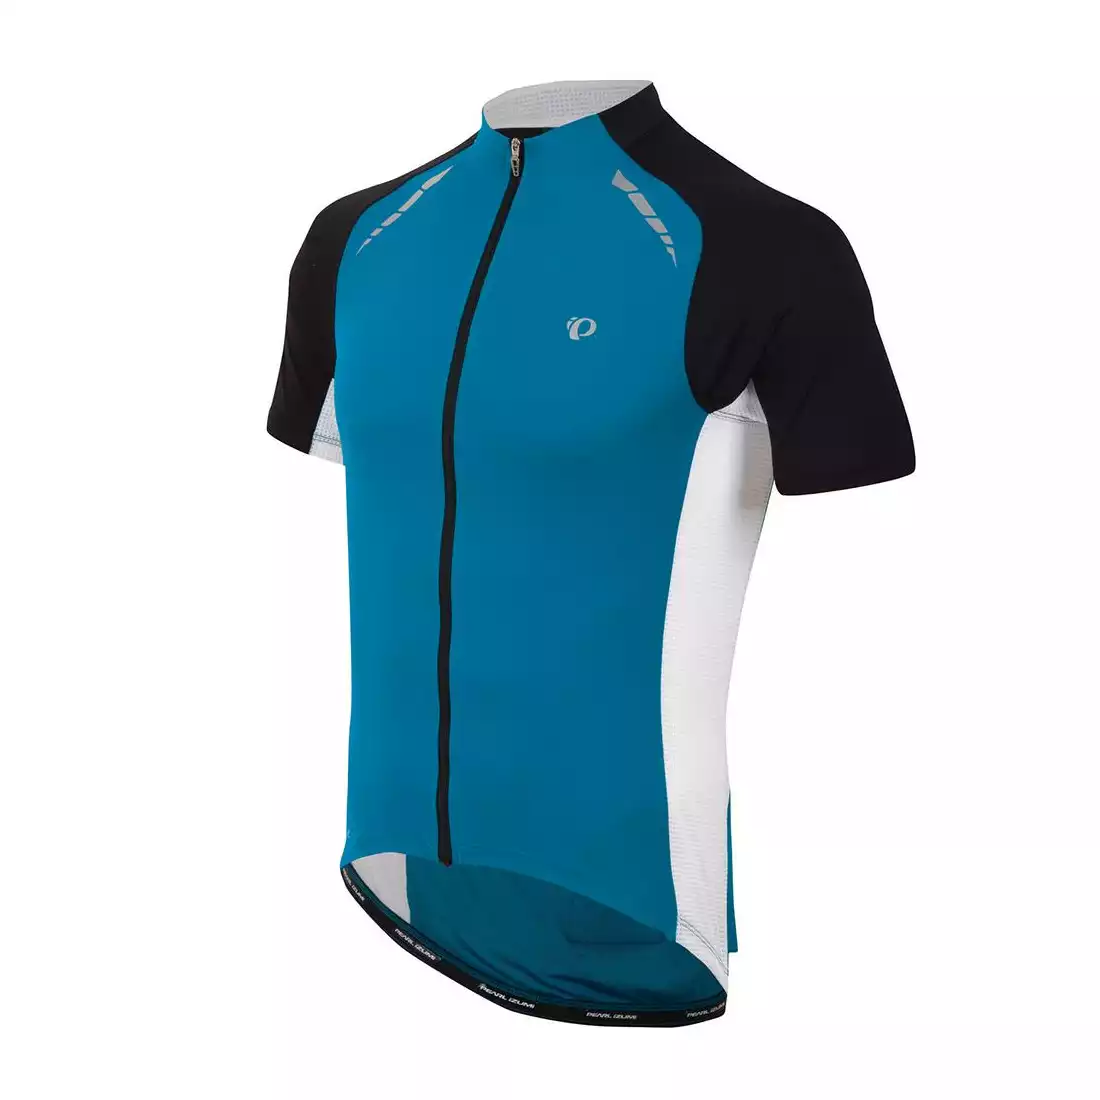 PEARL IZUMI - 11121311-4EC ELITE PURSUIT - lekka koszulka rowerowa, kolor: Niebieski